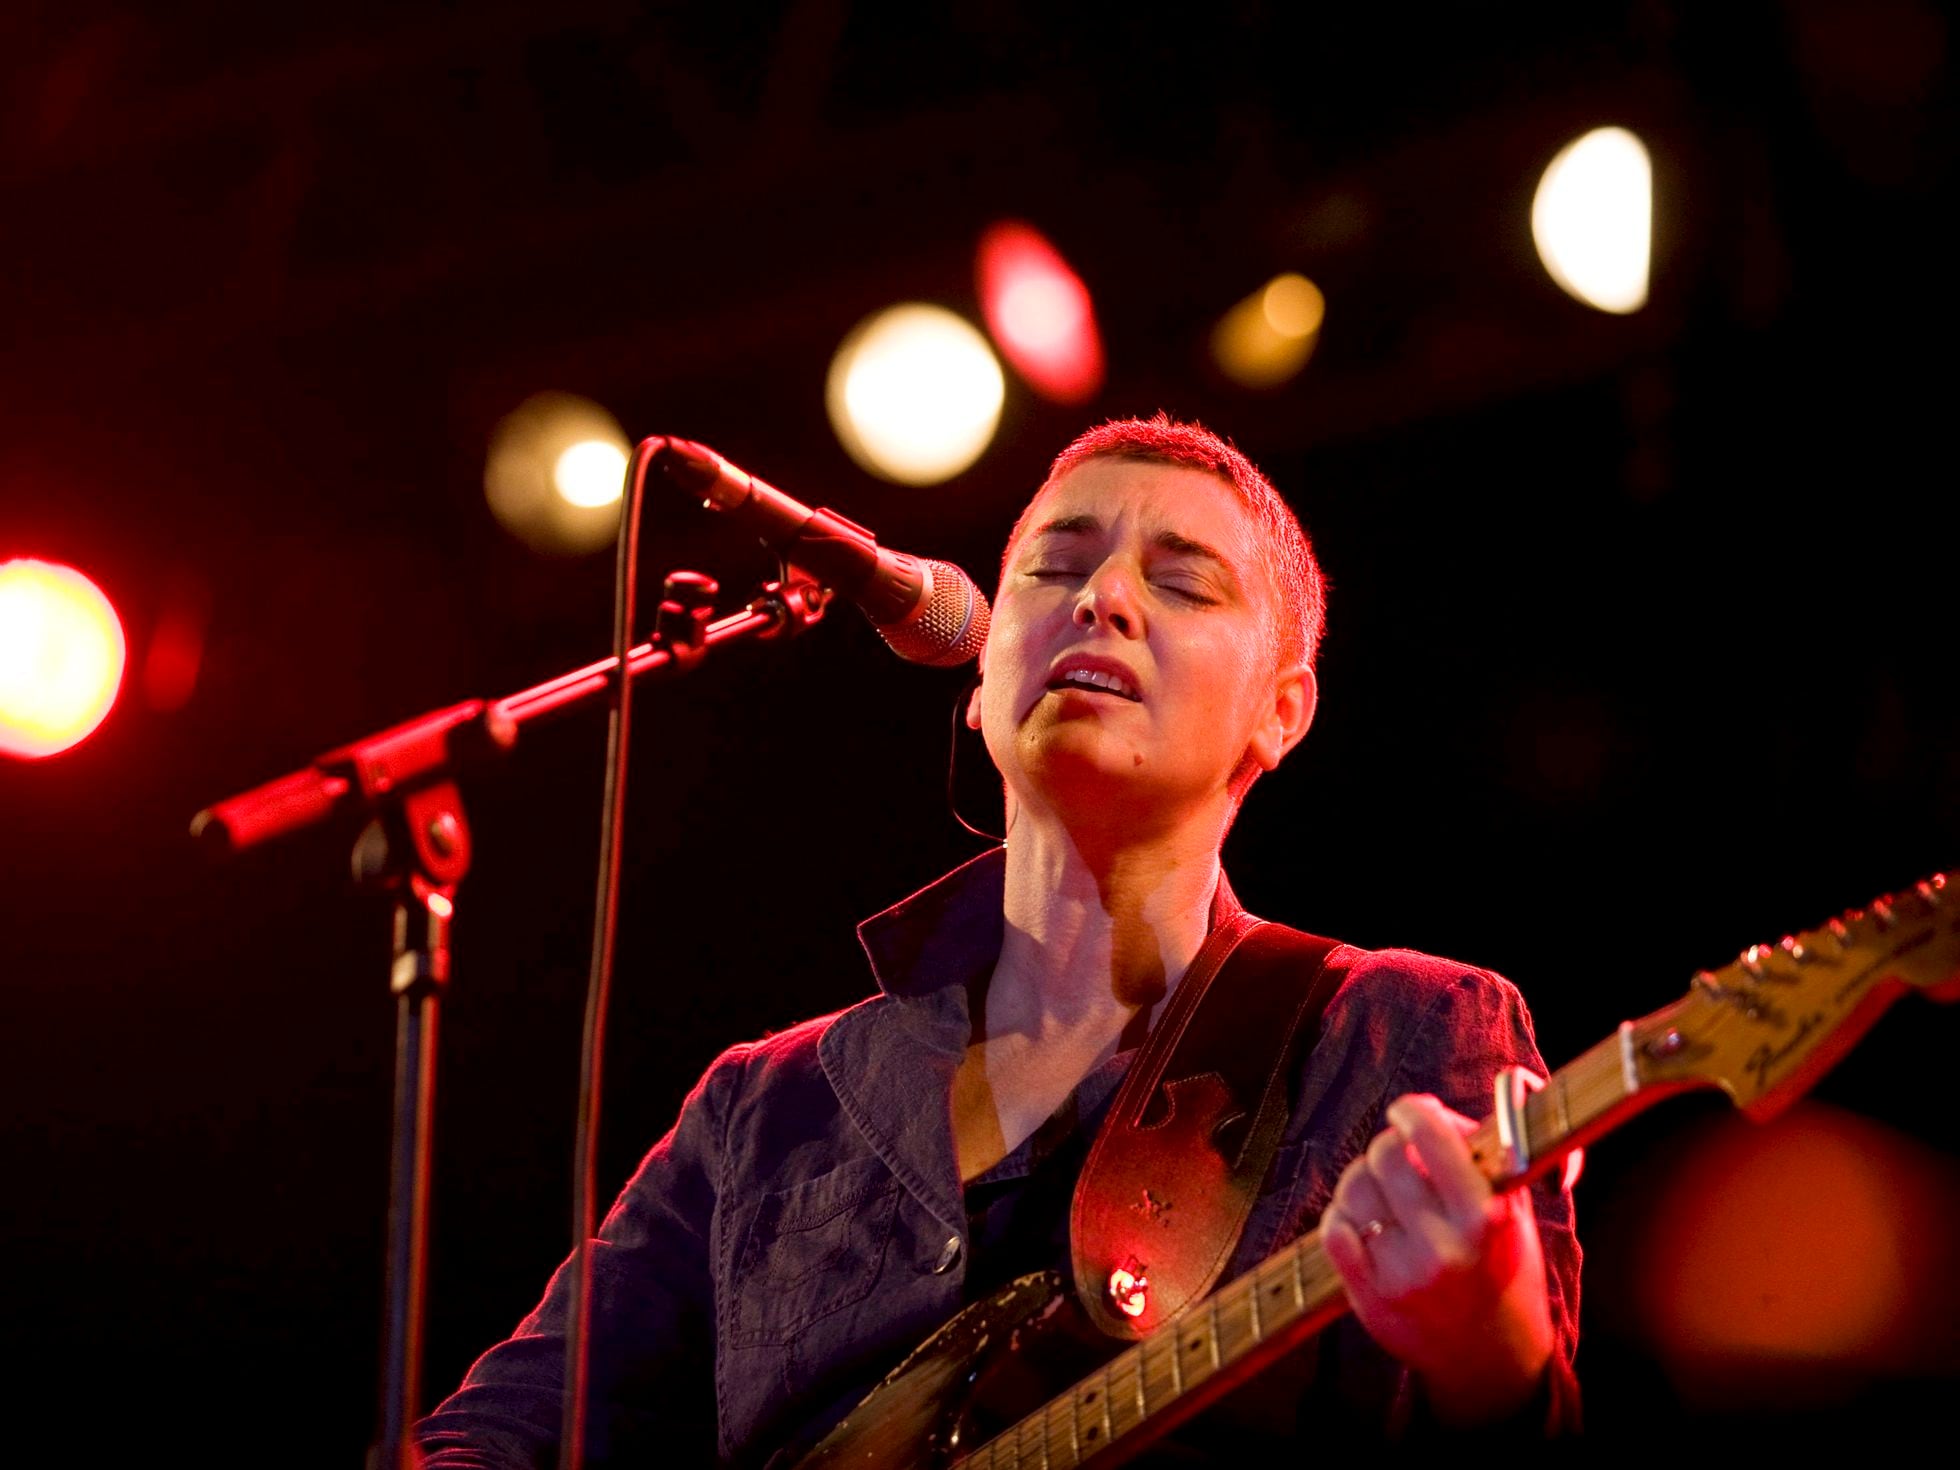 Sinéad O'Connor, acclaimed Dublin singer, dies aged 56 – The Irish